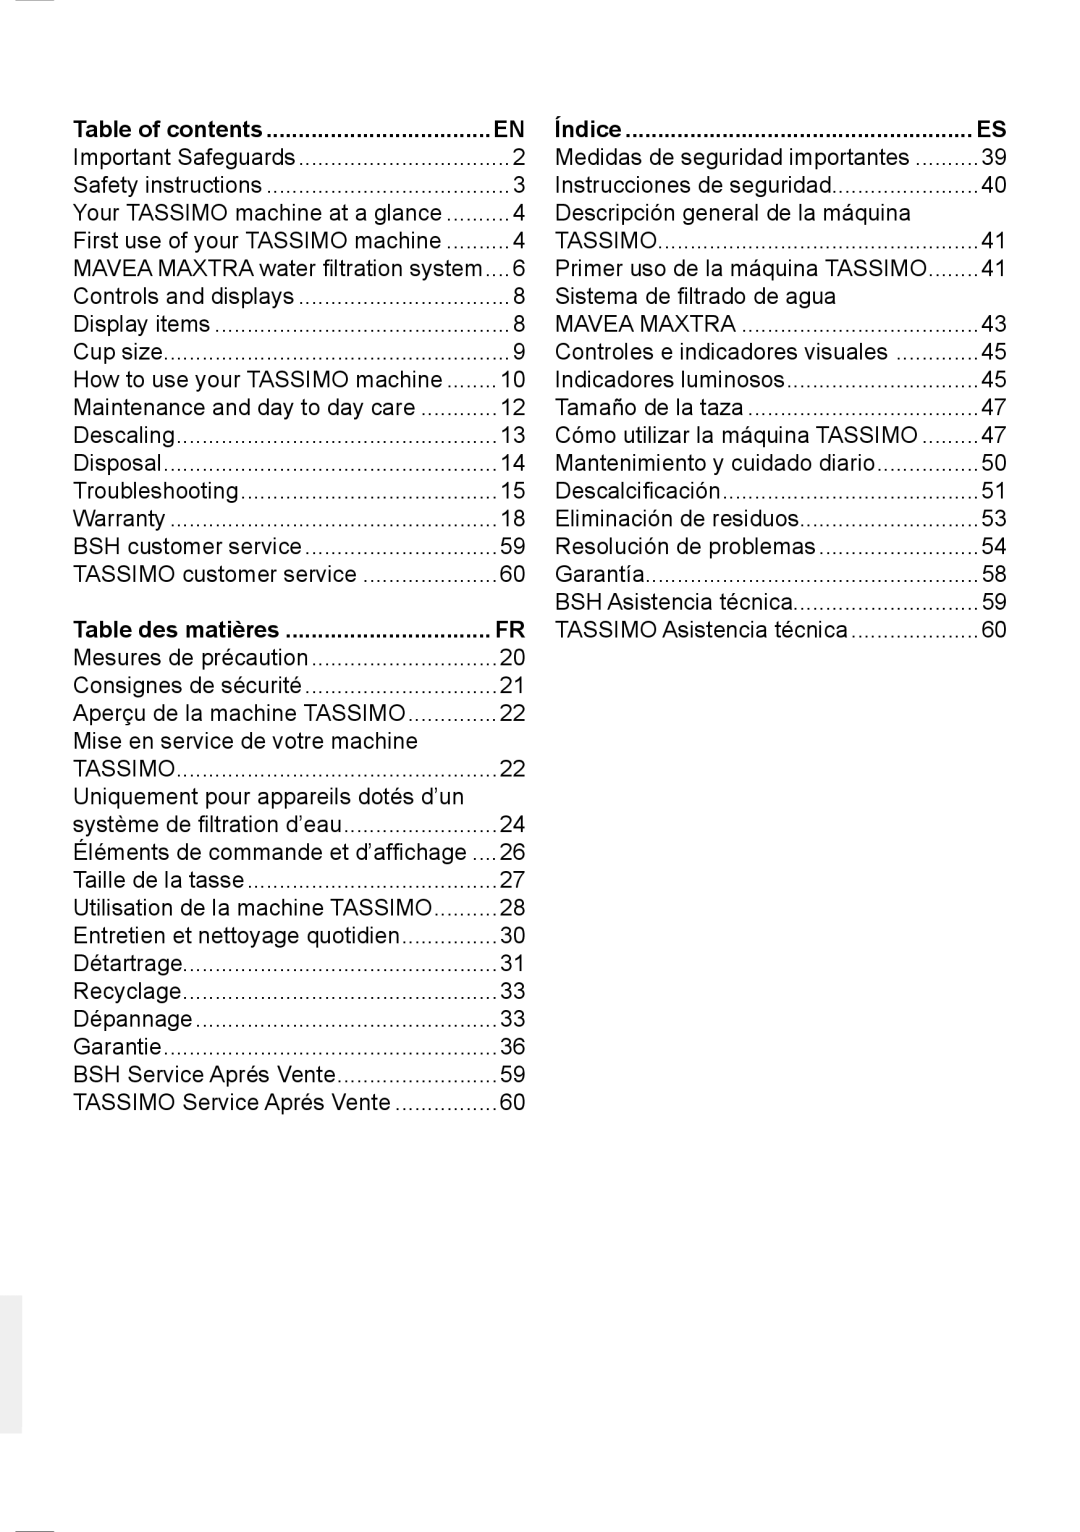 Bosch Appliances T45 instruction manual Table of contents, Table des matières, Índice 